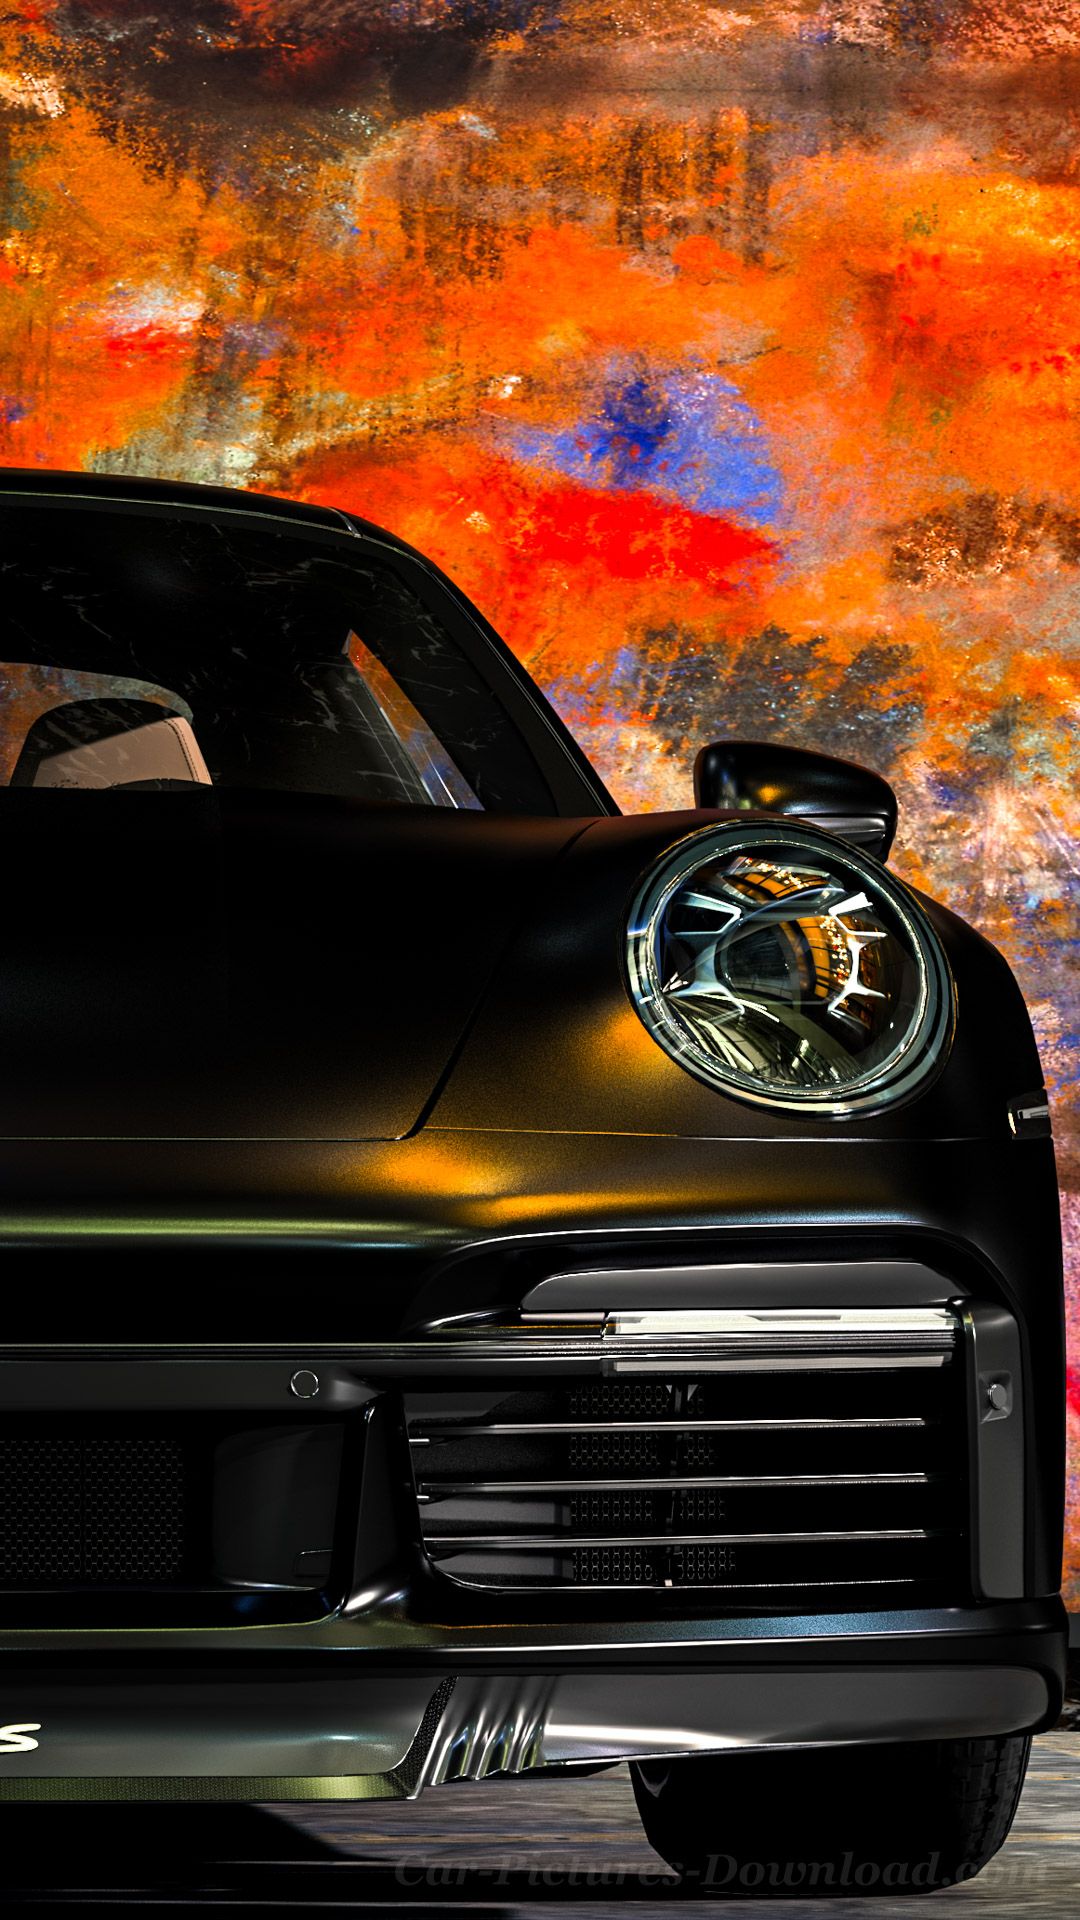 Porsche Wallpaper Image, Desktop & Mobile